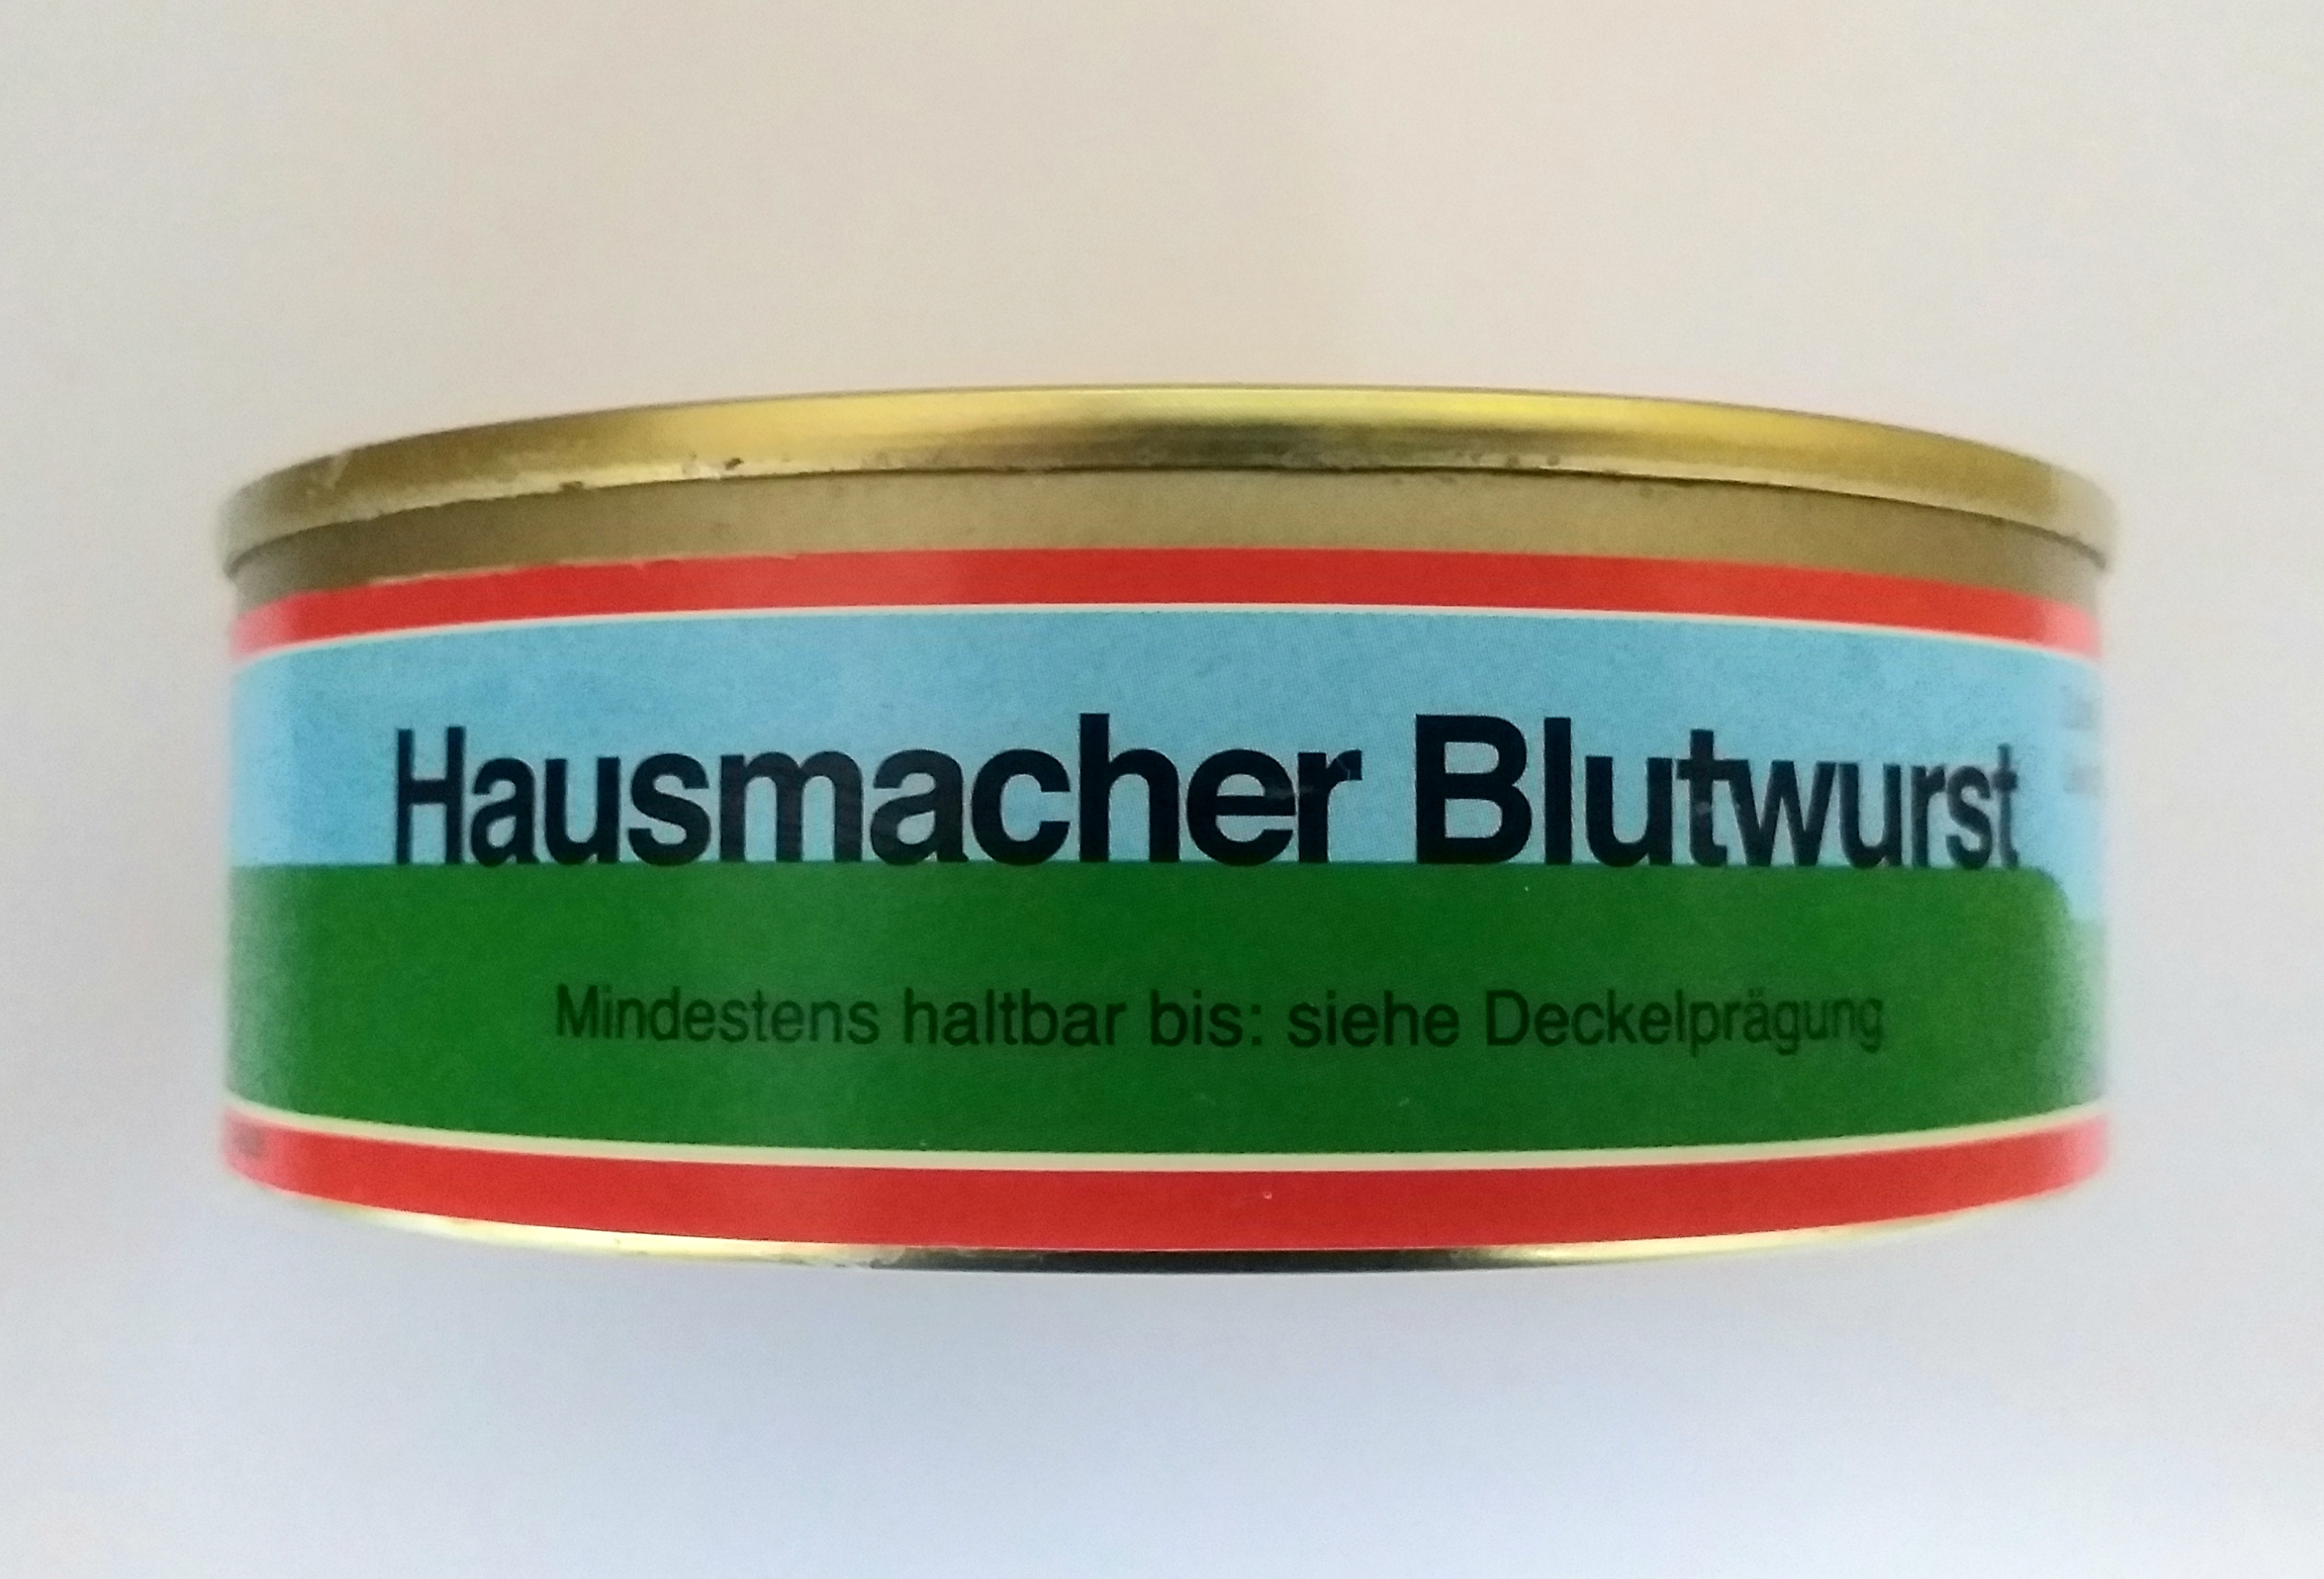 "Regional" Hausmacher Blutwurst Dose 200g